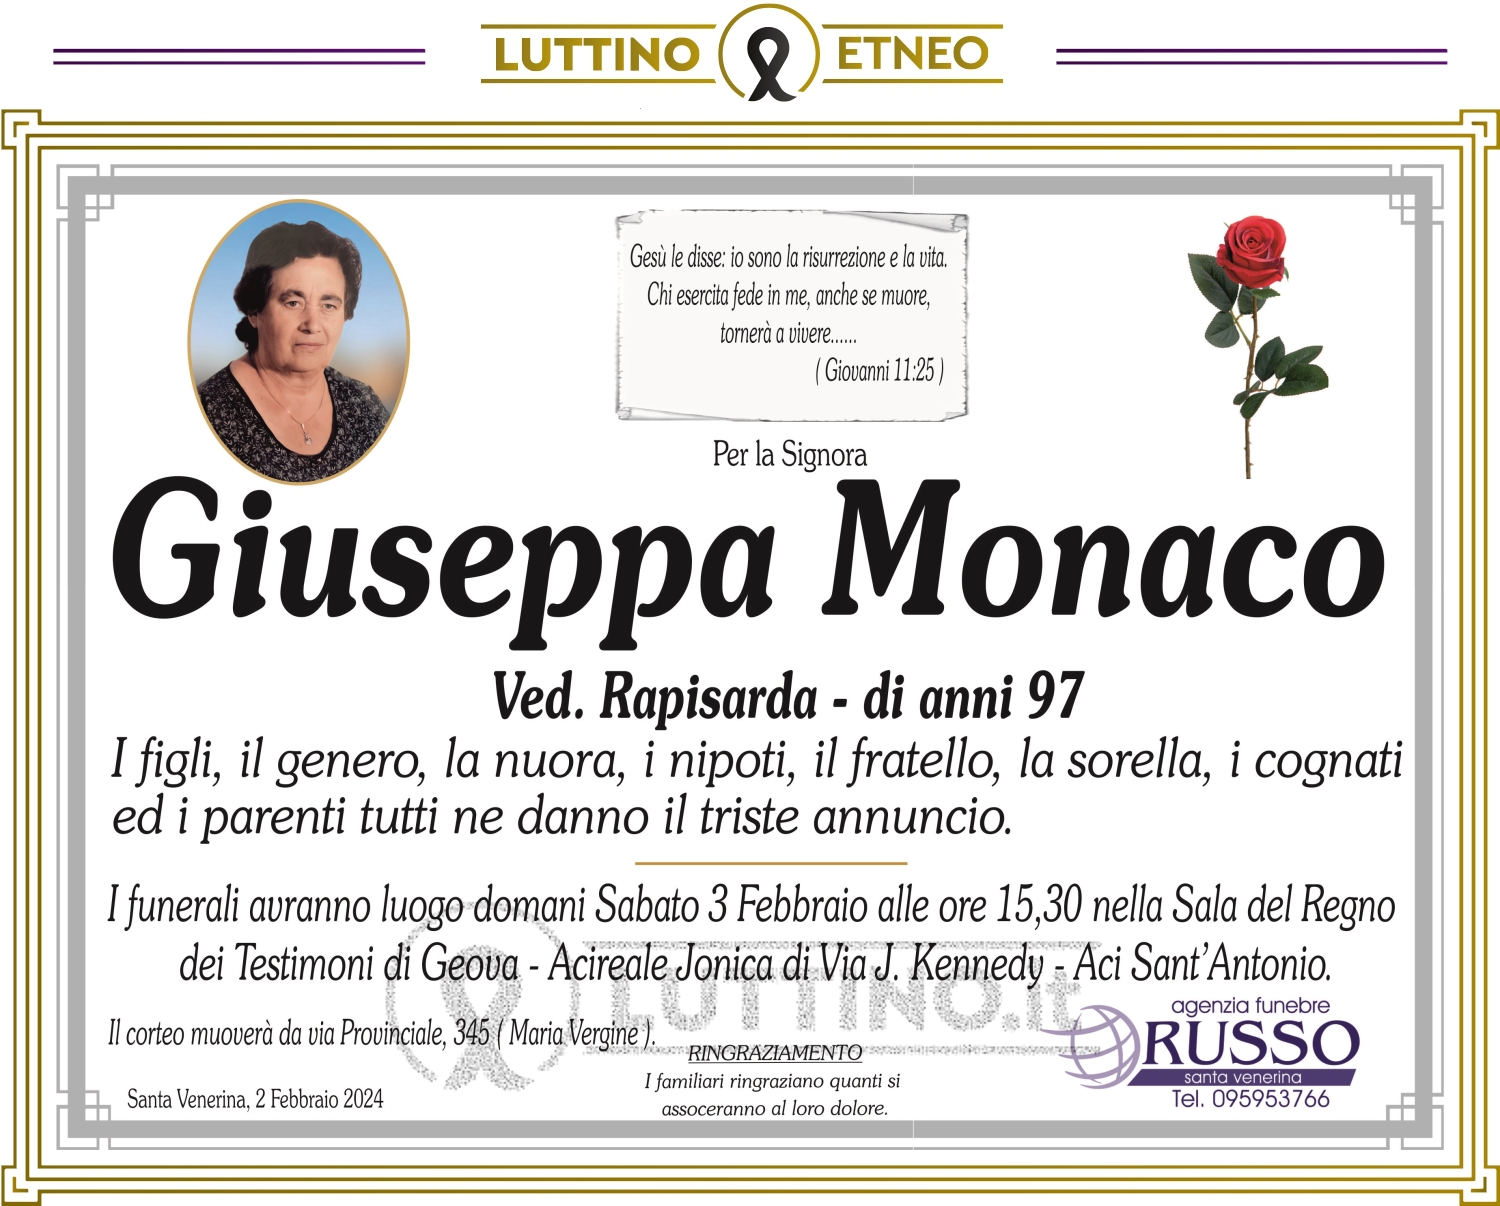 Giuseppa Monaco